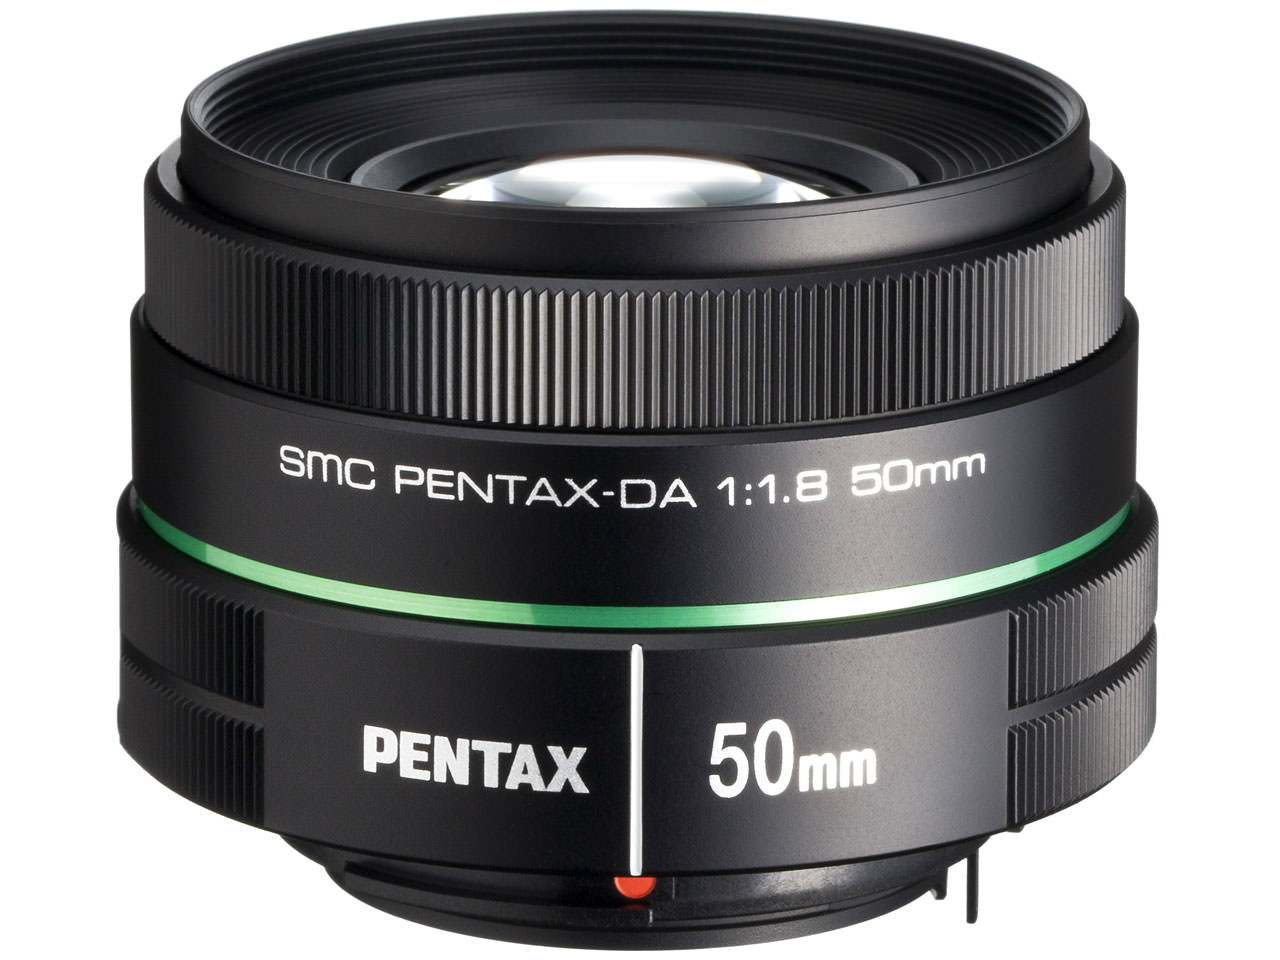 PENTAX smc PENTAX-DA 50mm F1.8